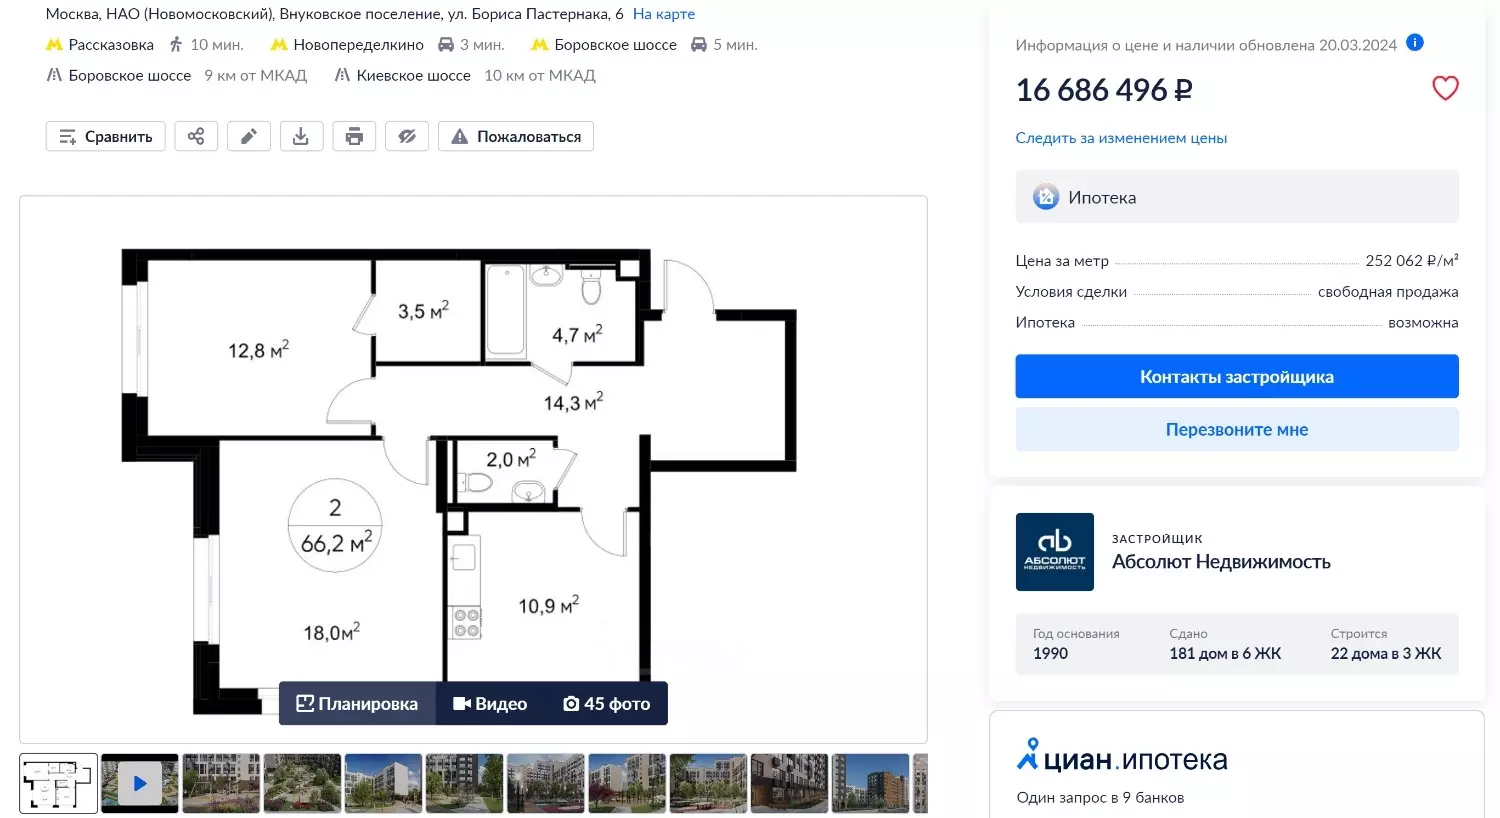 Двухкомнатная квартира от застройщика в Рассказовке обойдётся в 16,7 млн рублей